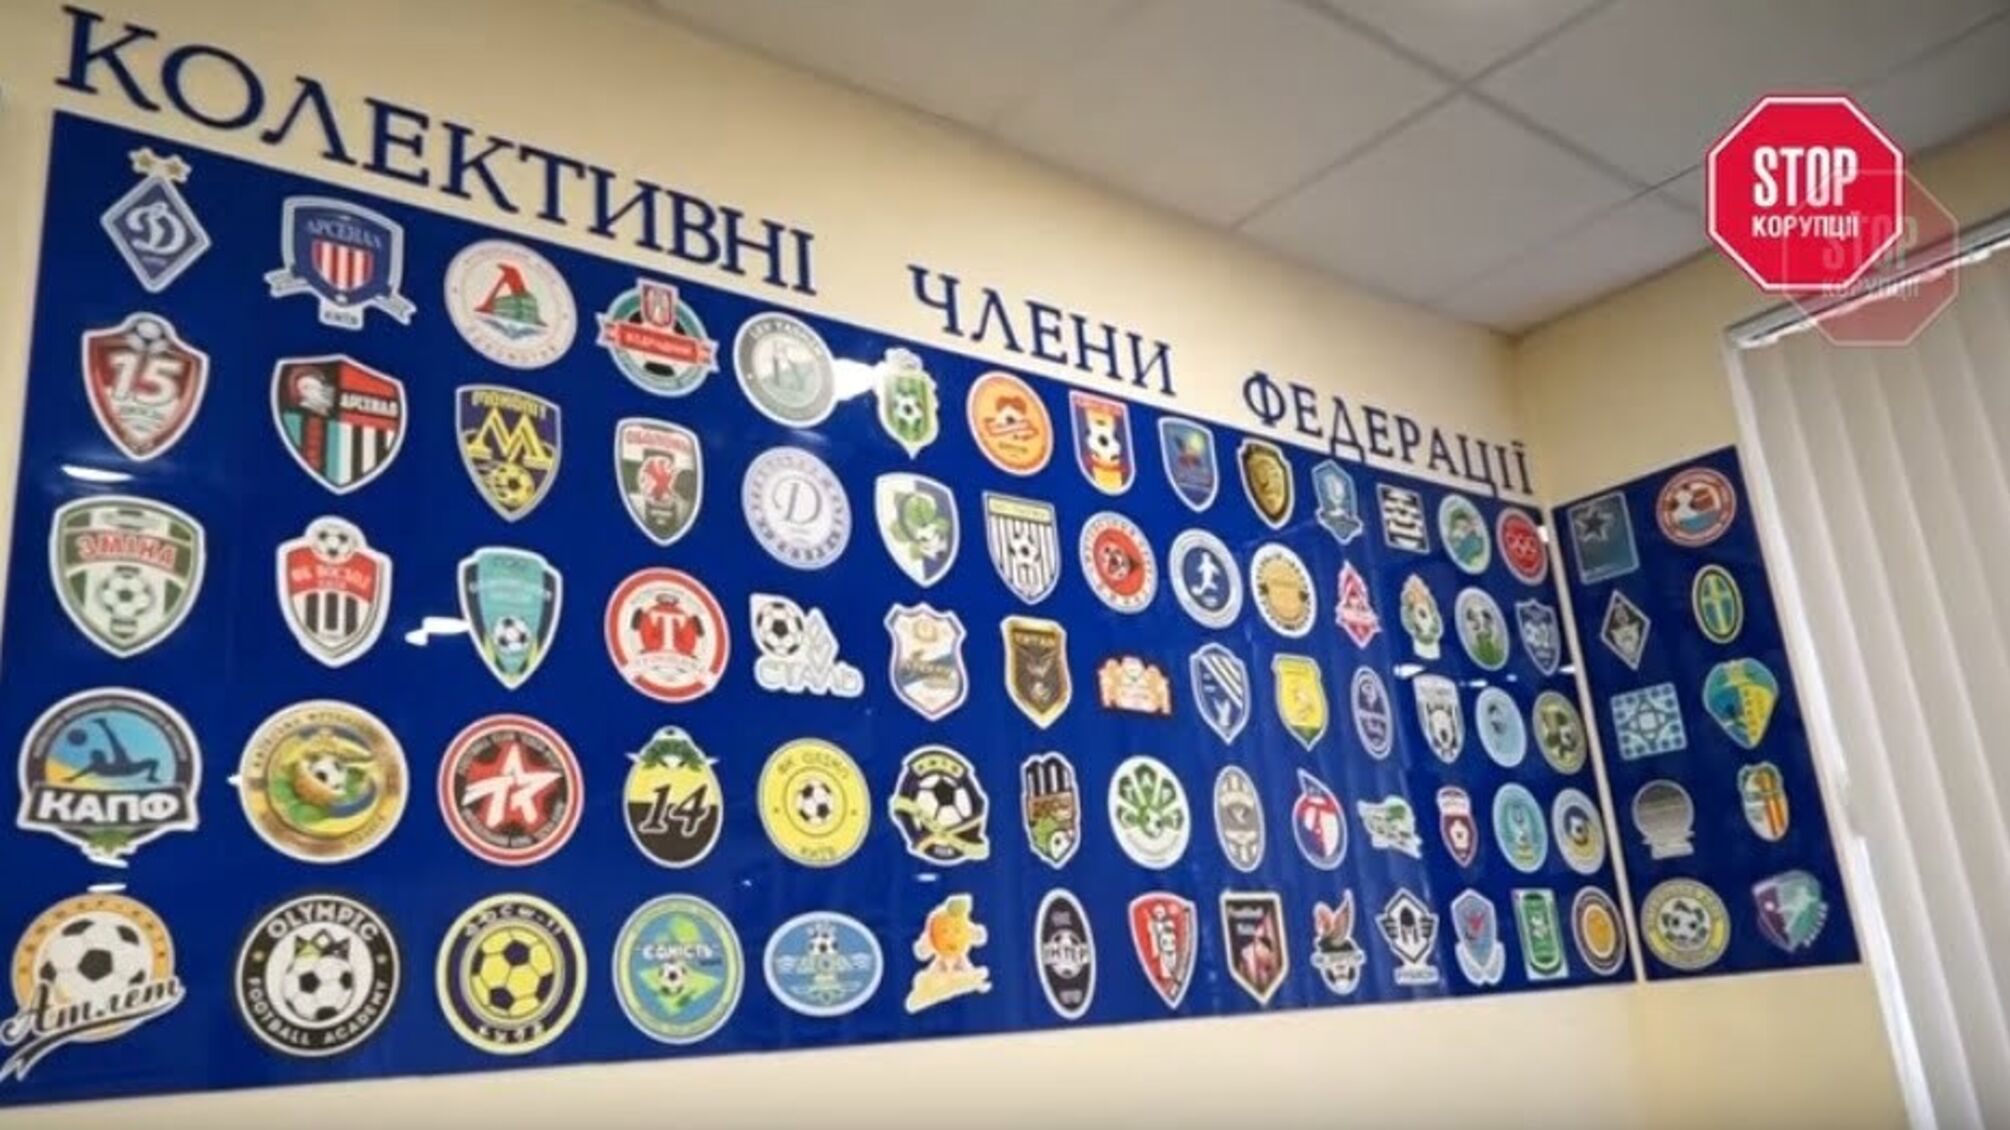 Через тиск очільника ФФУ Павелка по Україні почали змінювати голів обласних футбольних федерацій (відео)